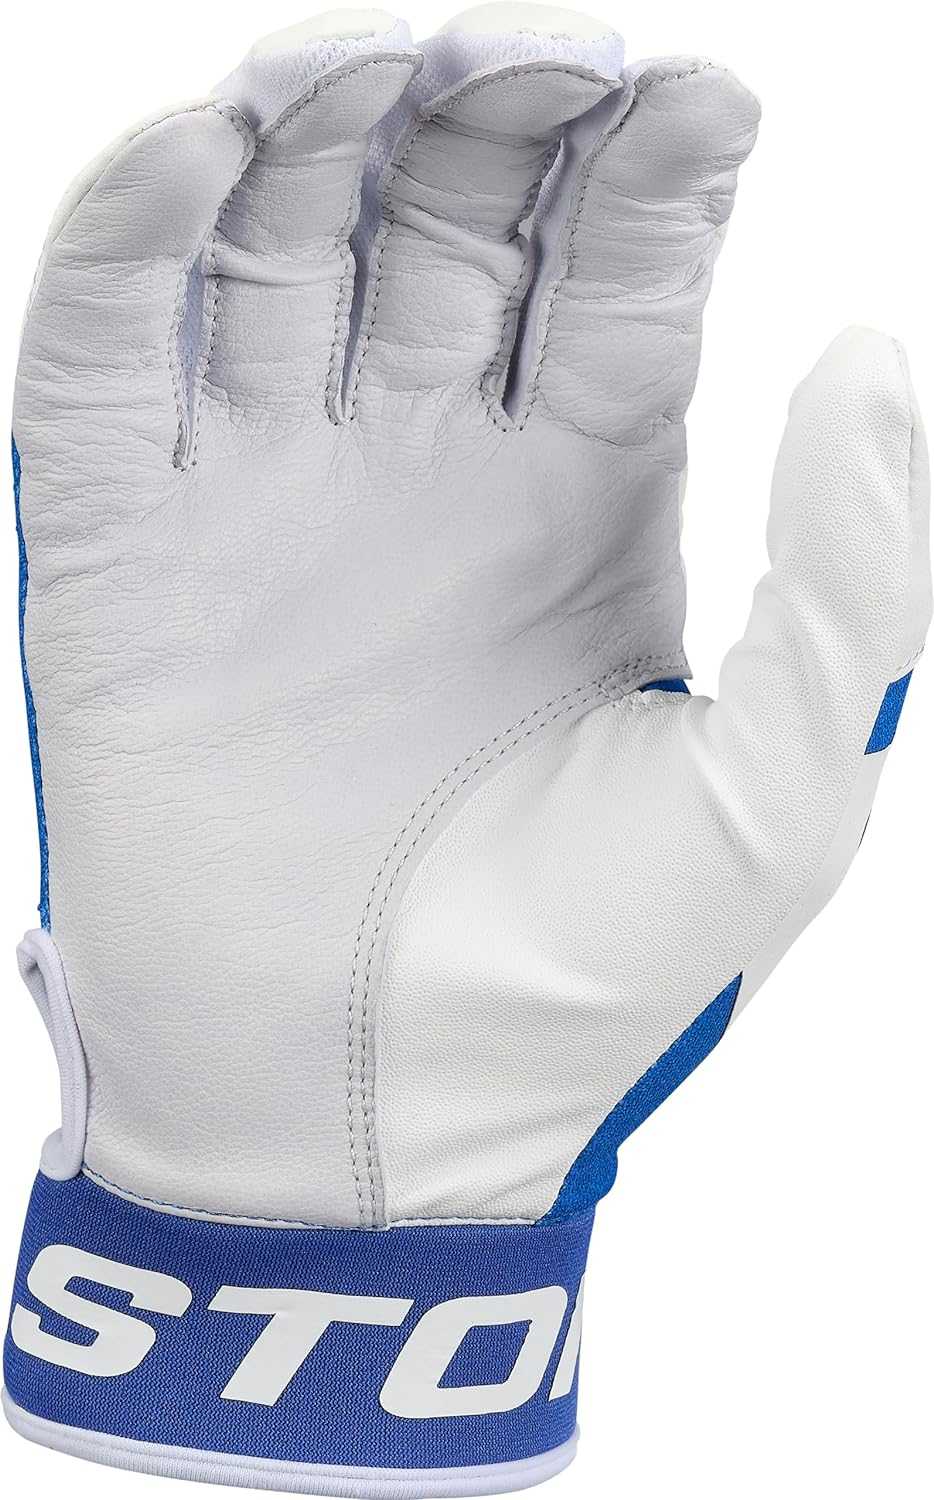 Easton MAV GT Batting Gloves - White Royal - HIT a Double